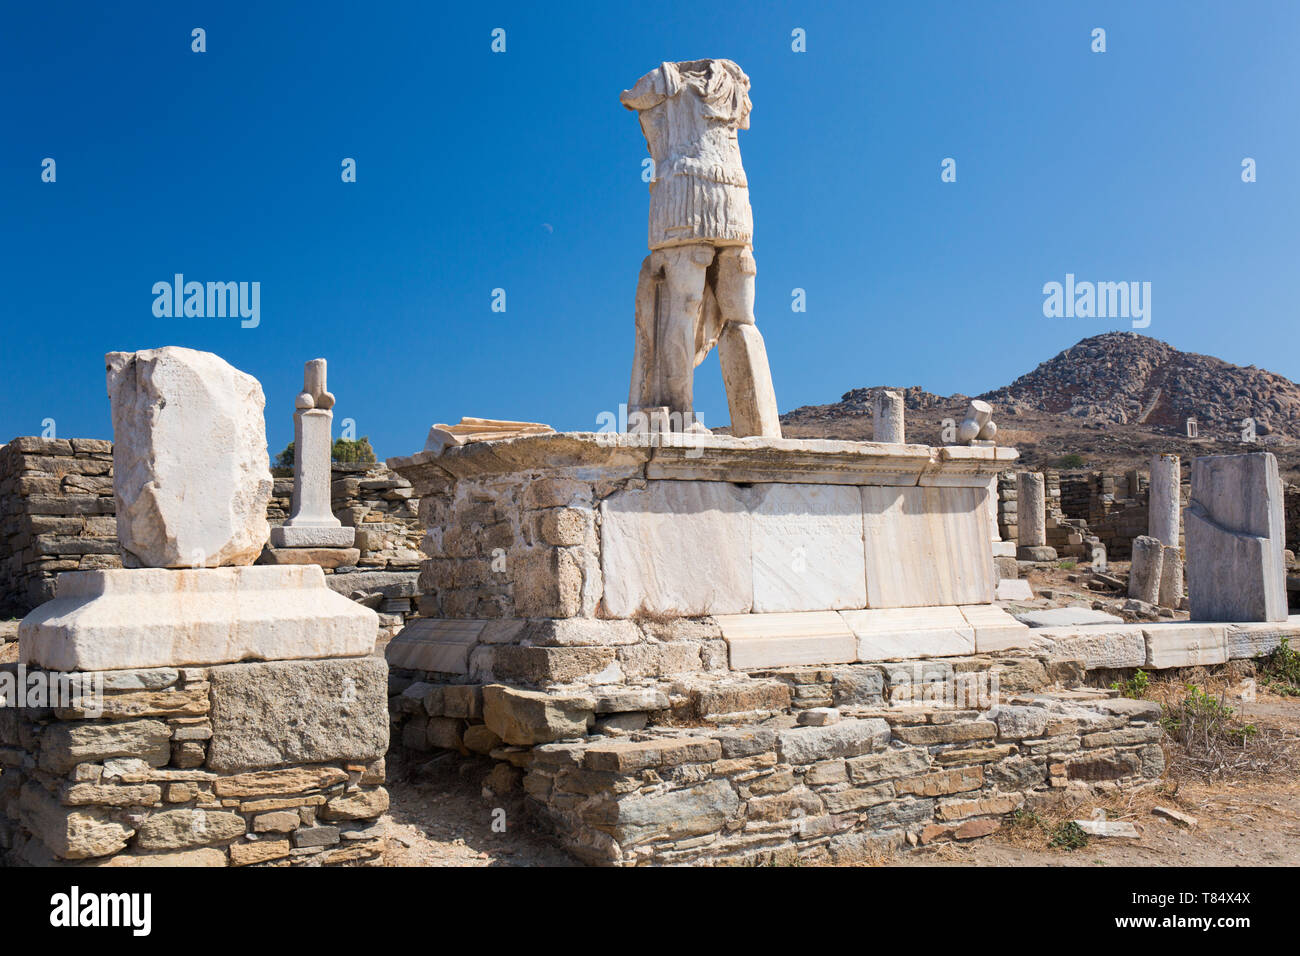 Delos, Mykonos, Egeo Meridionale, Grecia. Decapitati statua in piedi in mezzo a resti archeologici, Monte Kynthos in background. Foto Stock